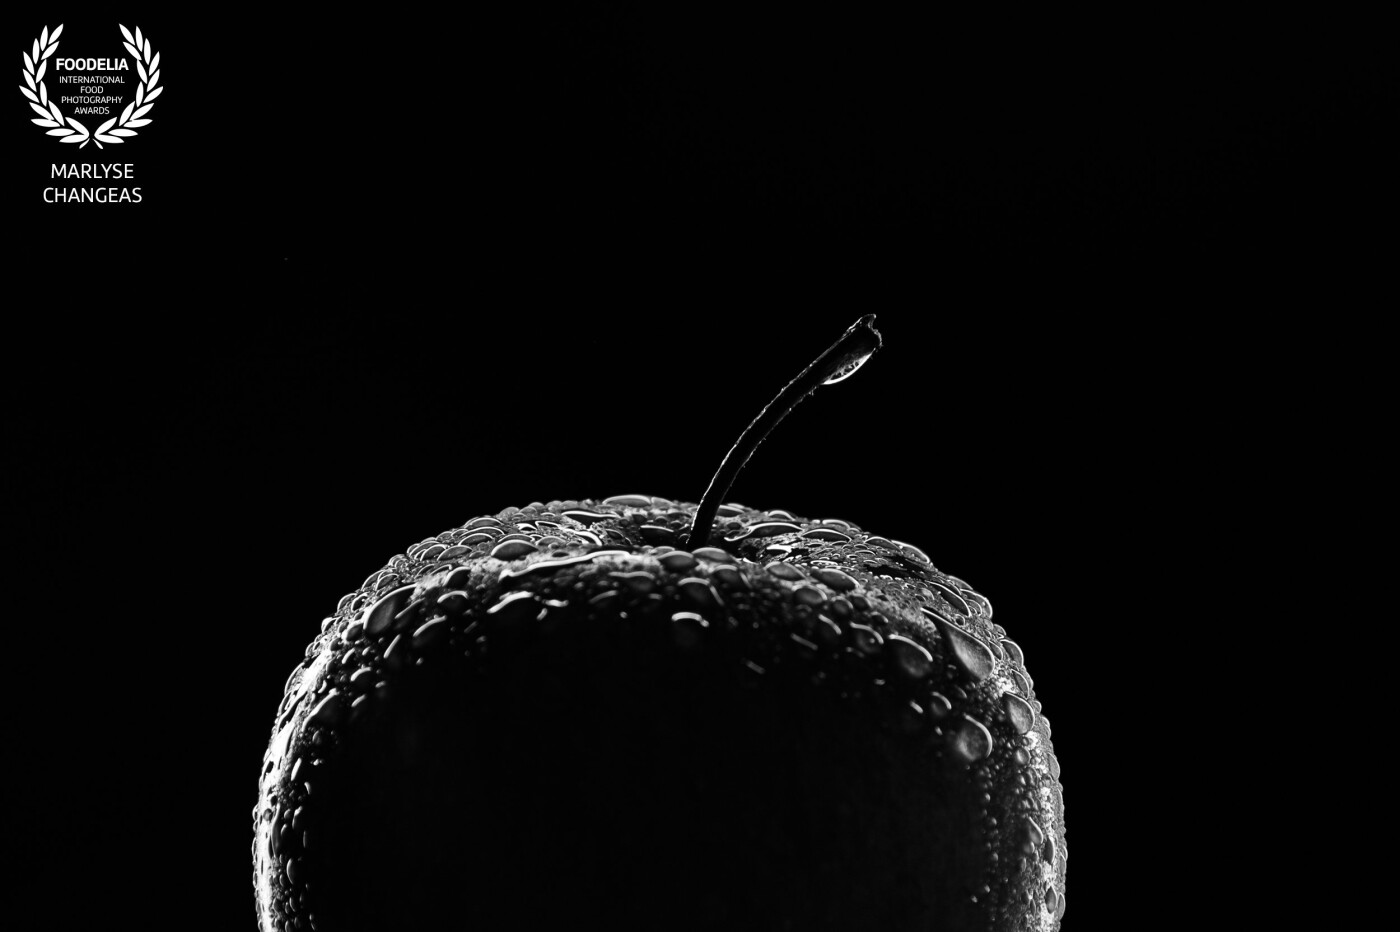 Jouer avec la lumière pour apporter un volume, une douceur. La silhouette d’une simple pomme donne de l’émotion.<br />
Le noir et blanc est parfait pour apporter l’essentiel à cette image.